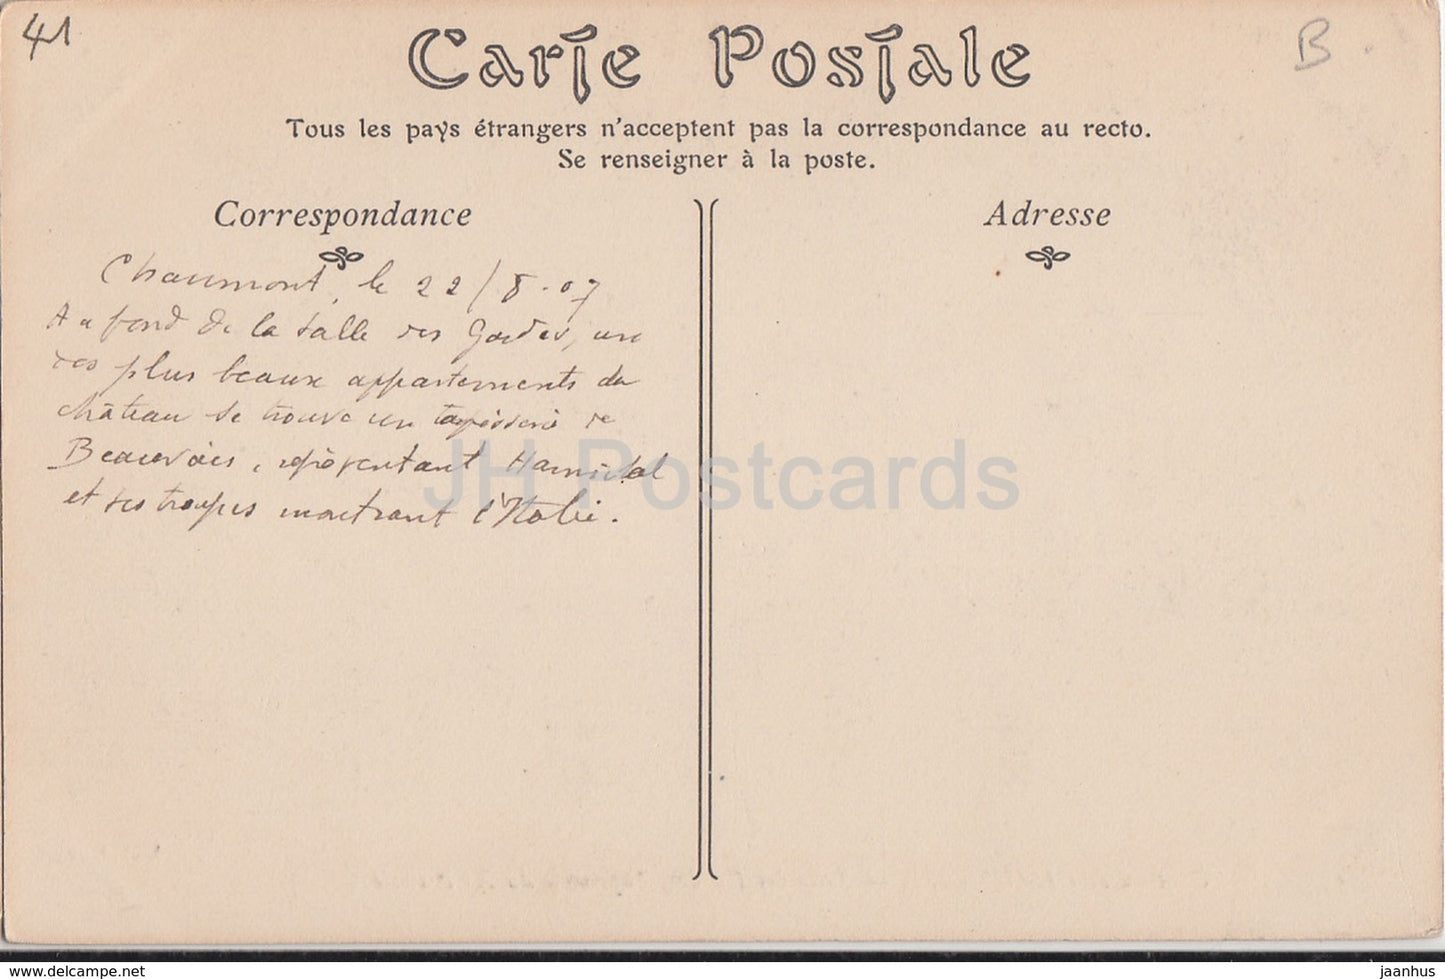 Château de Chaumont - Salle des Gardes - 55 - château - carte postale ancienne - 1907 - France - occasion